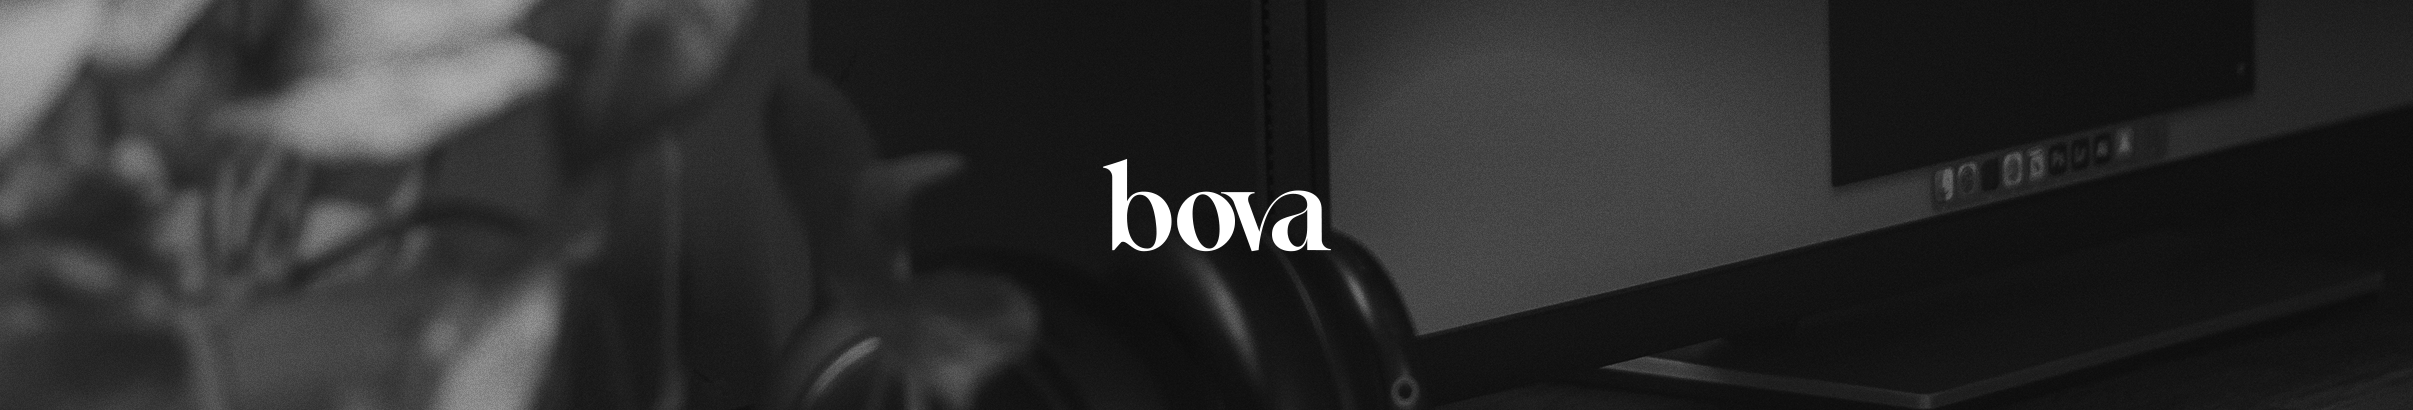 Paulo Bova's profile banner